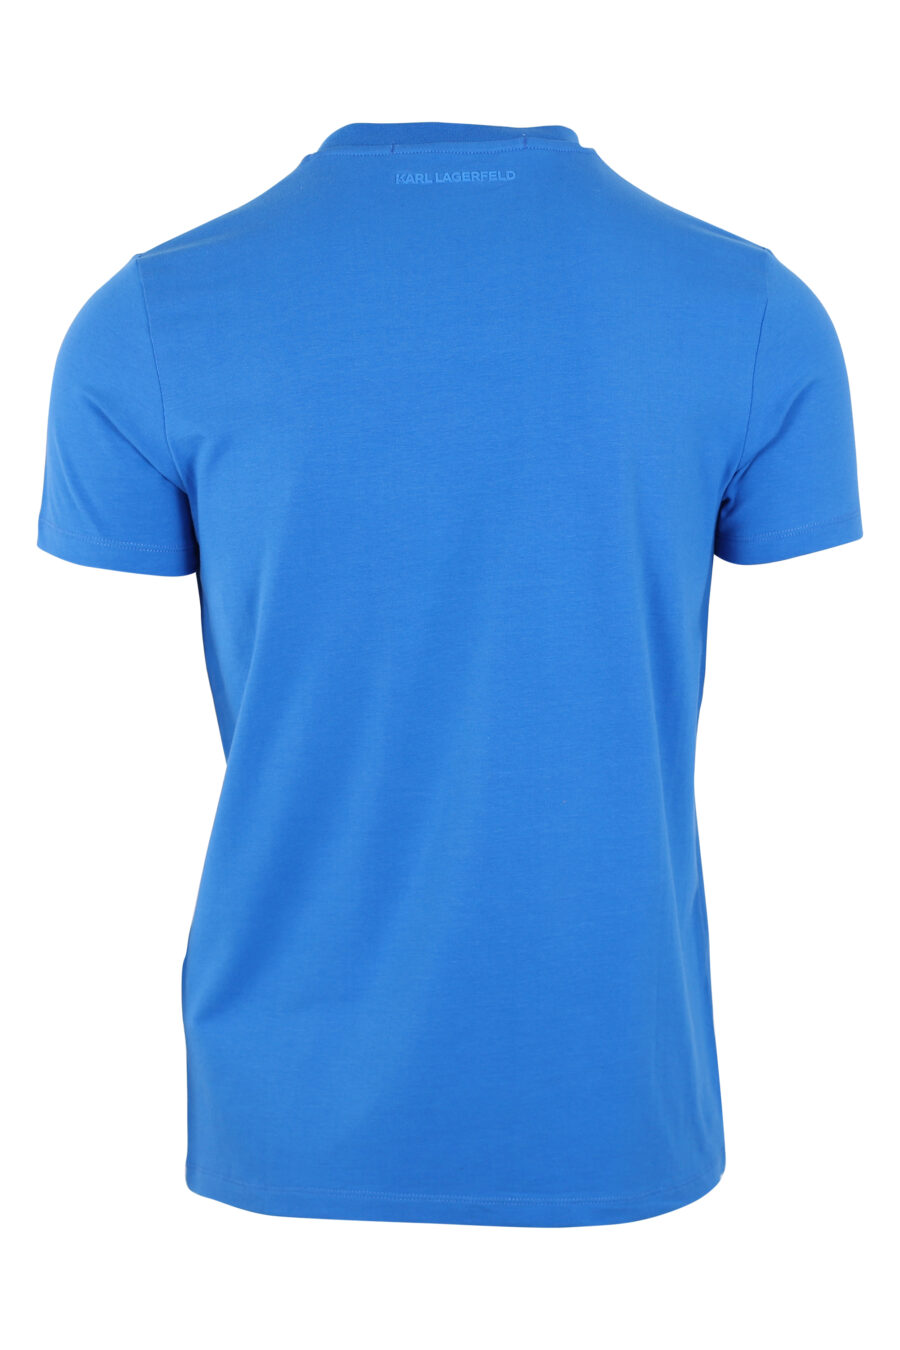 T-shirt azul com maxilogo "karl" preto em contraste - IMG 9448